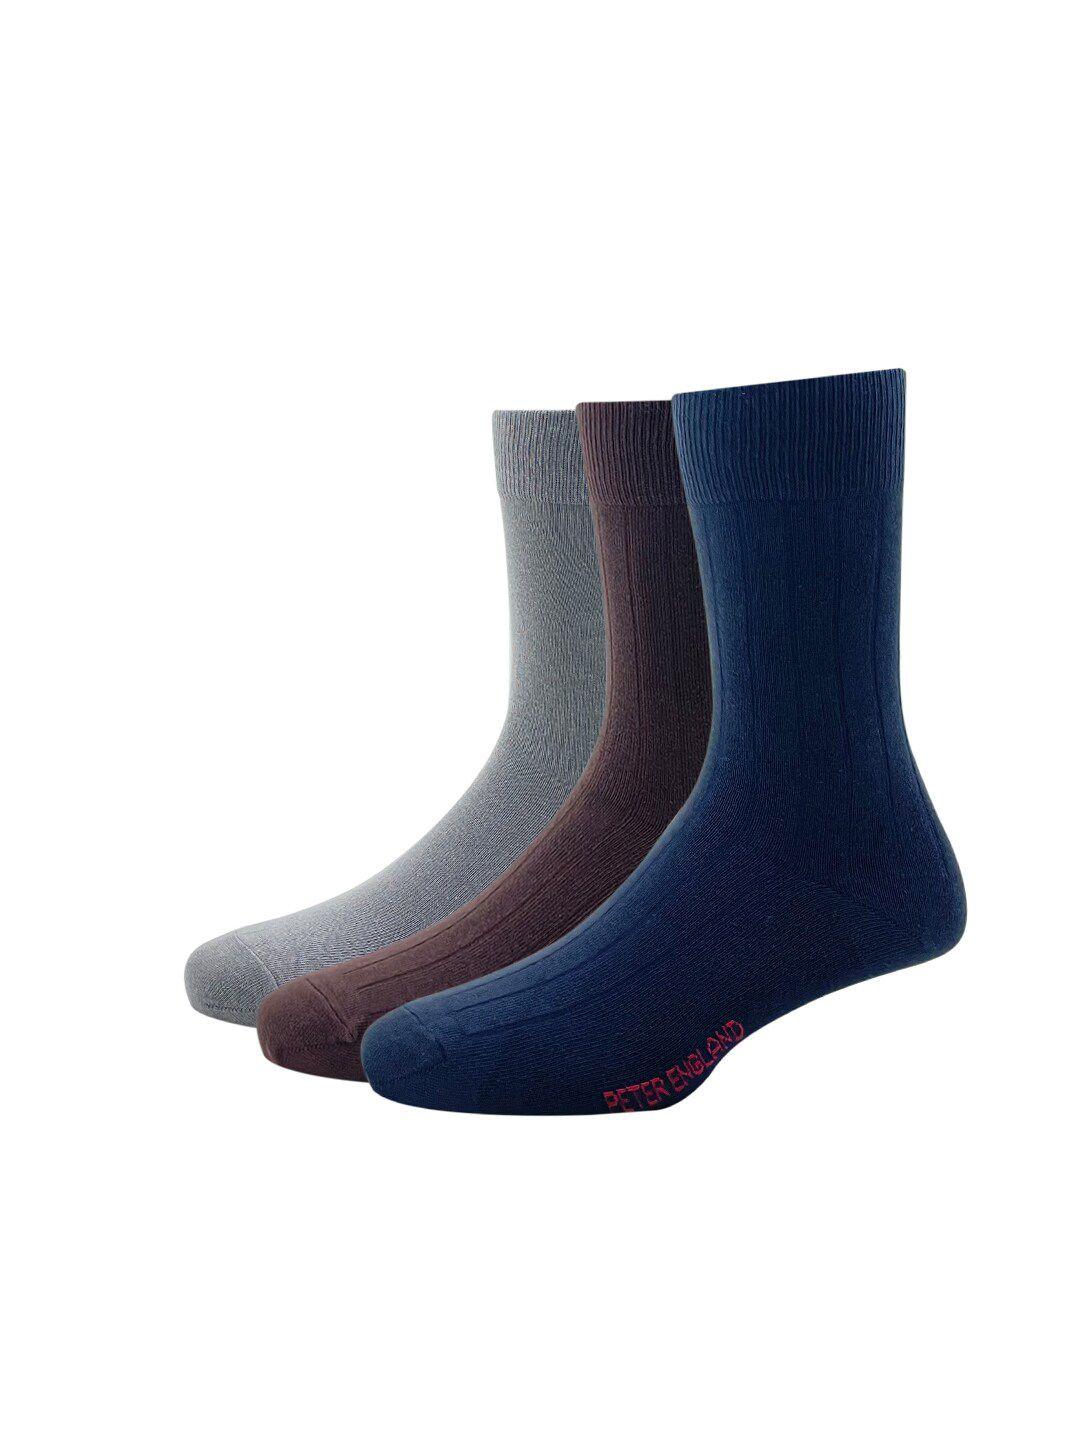 peter england men pack of 3 brown & grey calf length socks